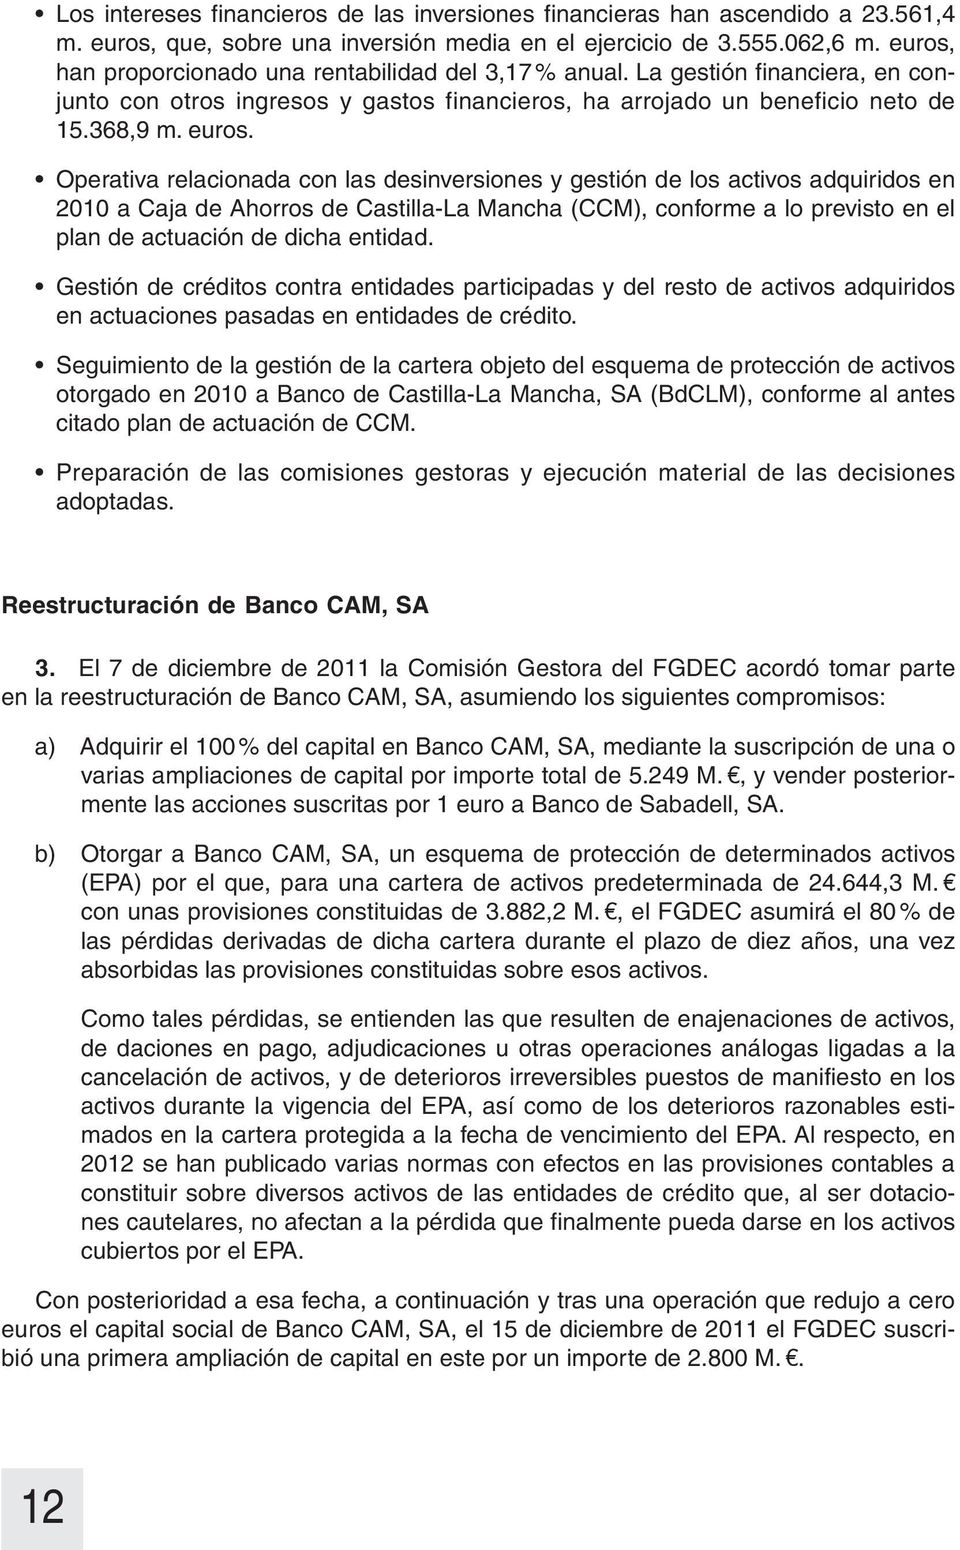 Operativa relacionada con las desinversiones y gestión de los activos adquiridos en 2010 a Caja de Ahorros de Castilla-La Mancha (CCM), conforme a lo previsto en el plan de actuación de dicha entidad.